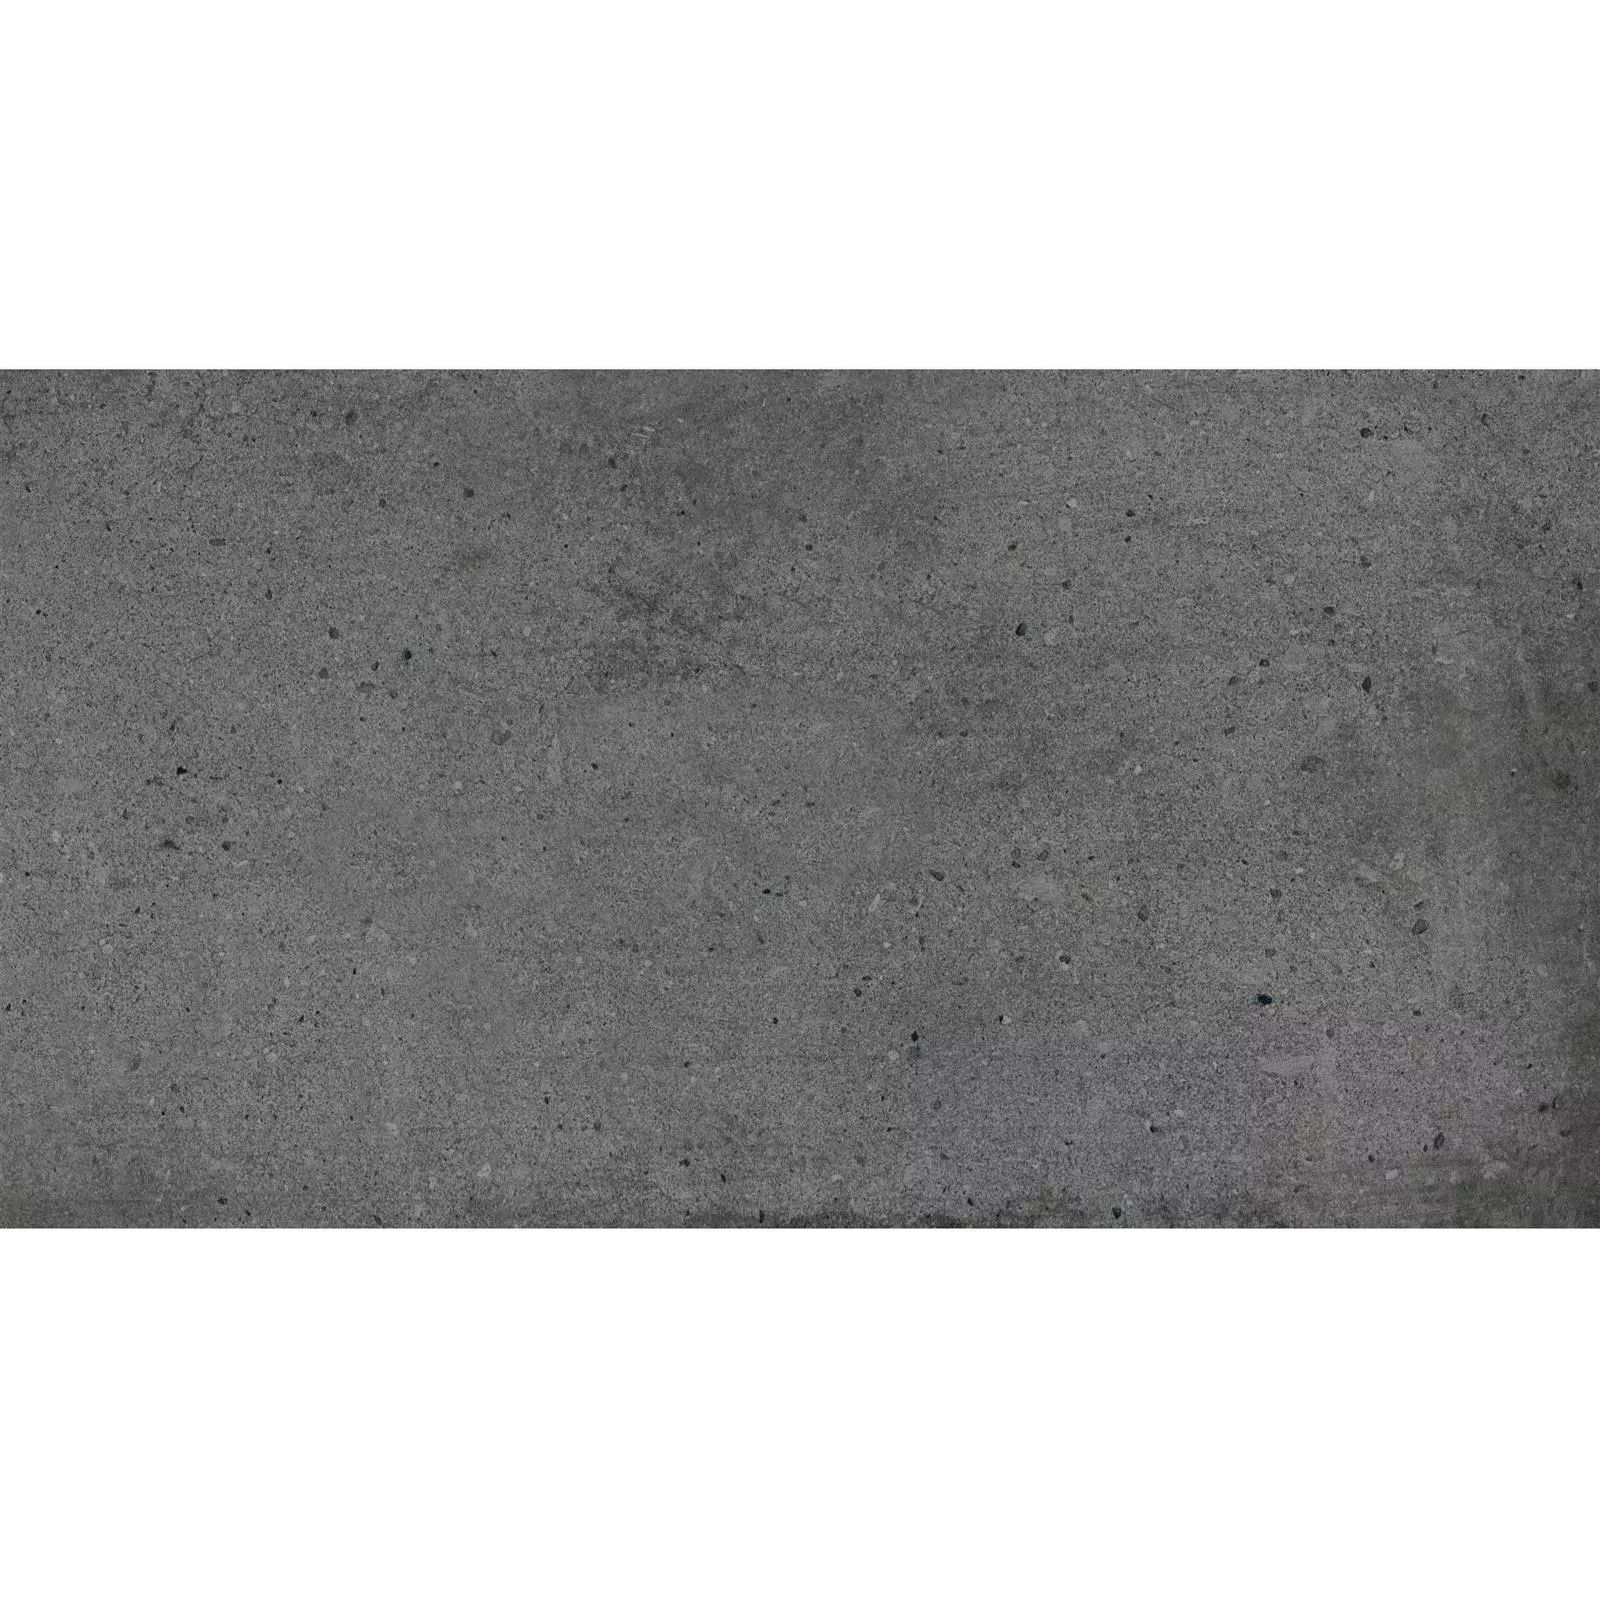 Padrão Ladrilhos Freeland Olhar de Pedra R10/B Antracite 30x60cm